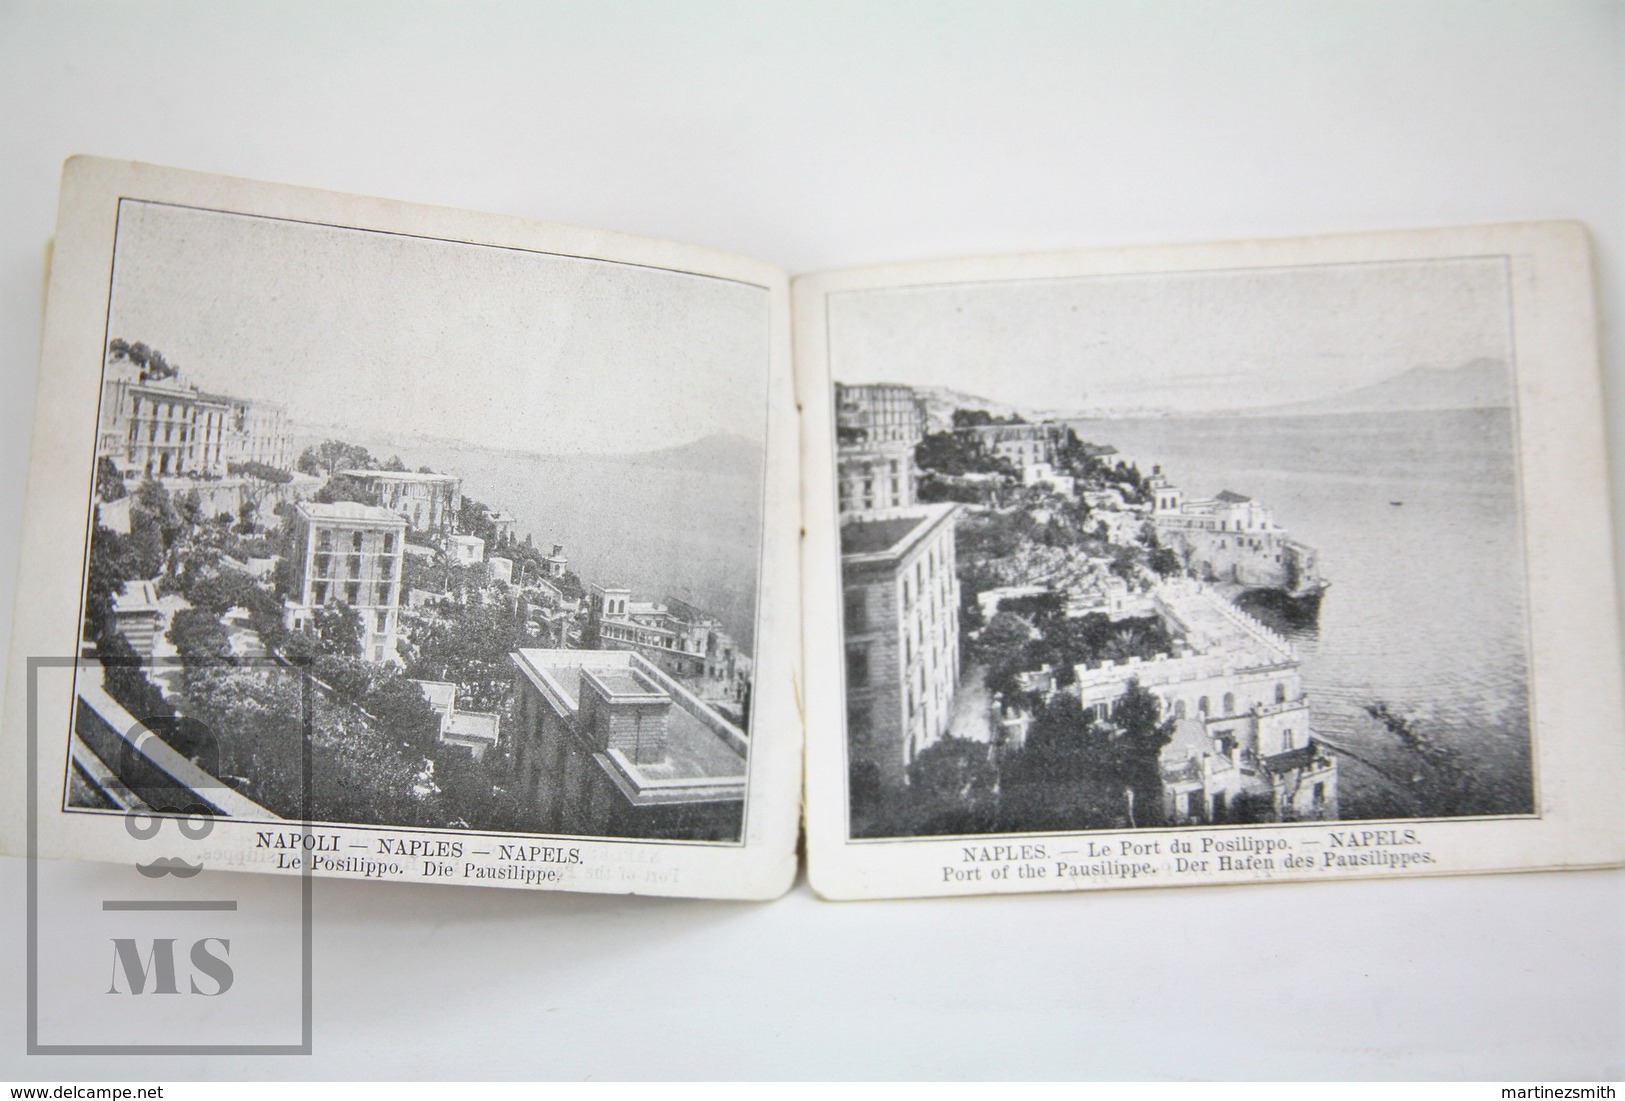 Old Trading Card Folder - Cacao Bensdorp Advertising - Voyage Autor Du Monde - Naples, Milan - Autres & Non Classés